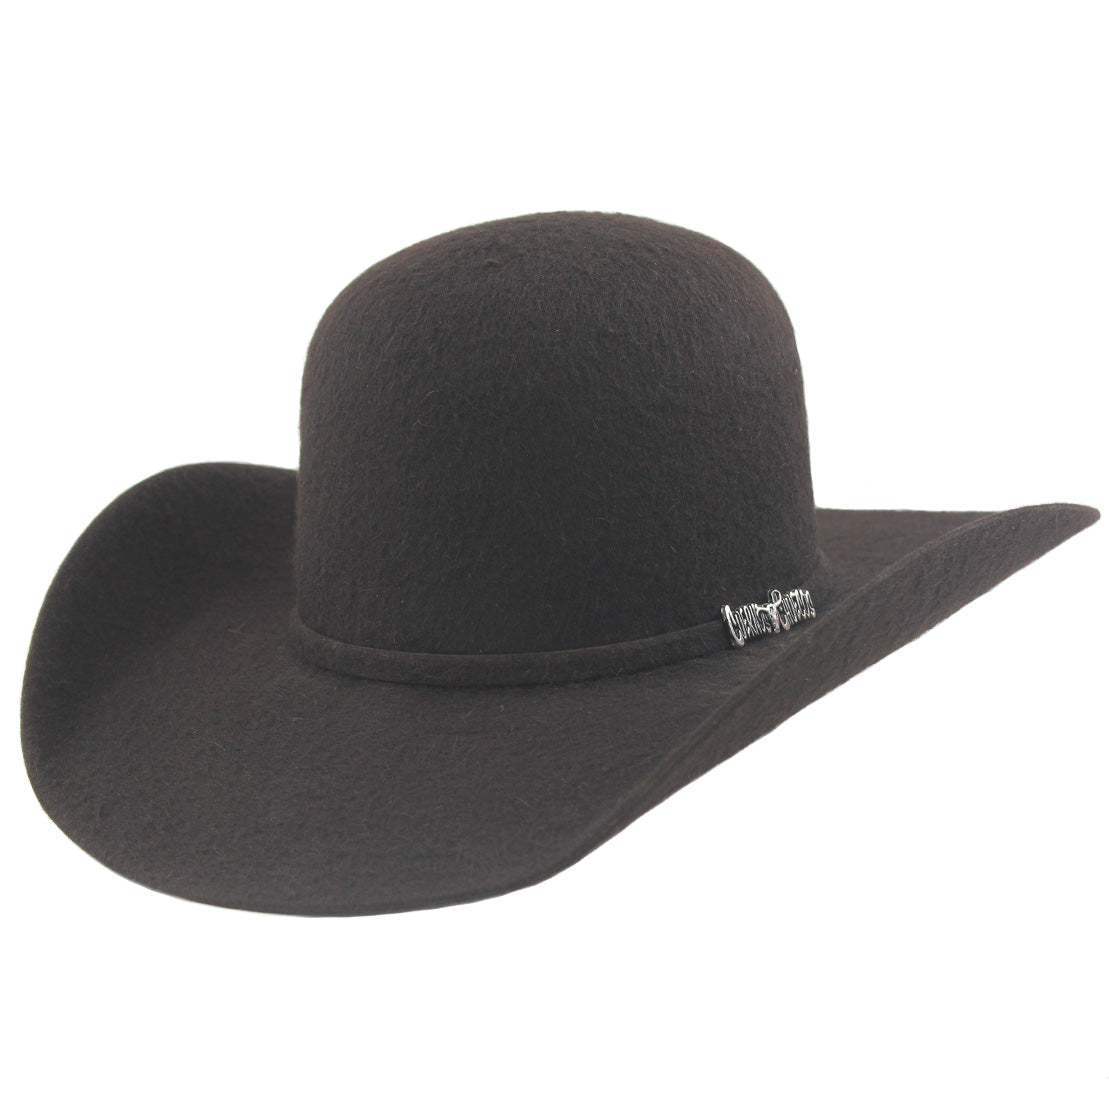 Cuernos Chuecos 10x Chapeau de cowboy à couronne ouverte en feutre de fourrure grizzly chocolat